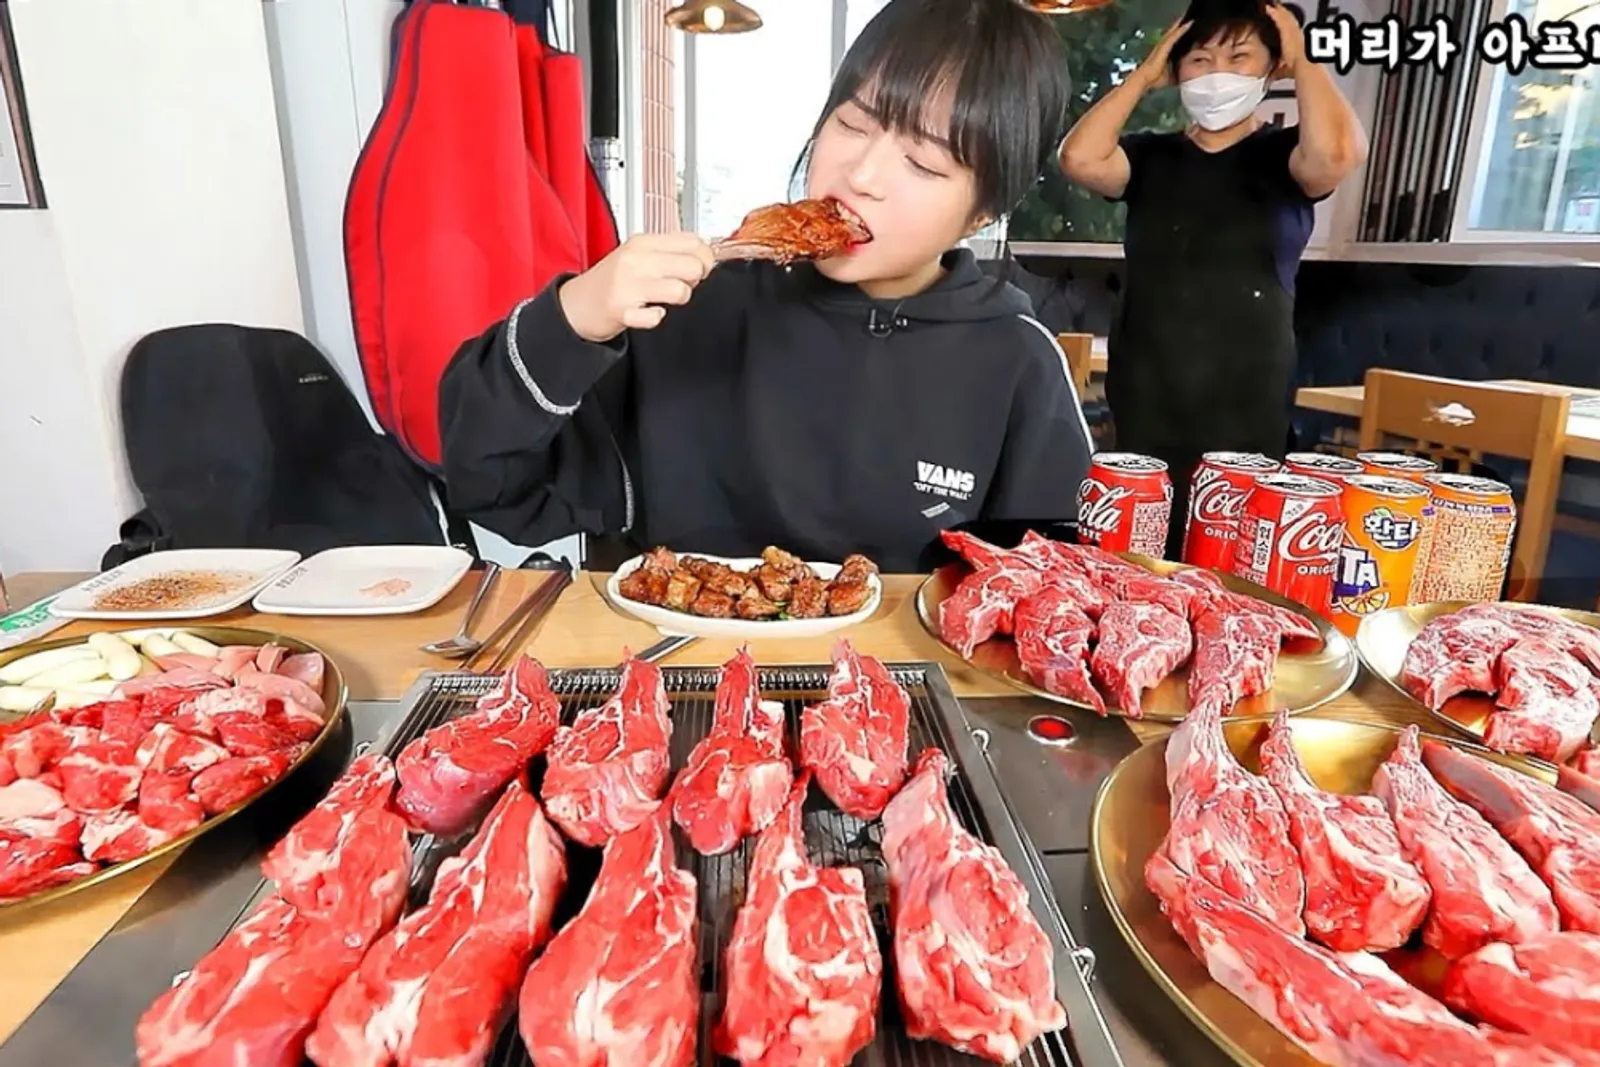 7 Rekomendasi Restoran di Korea dari Artis Mukbangers: Siap Mukbang?